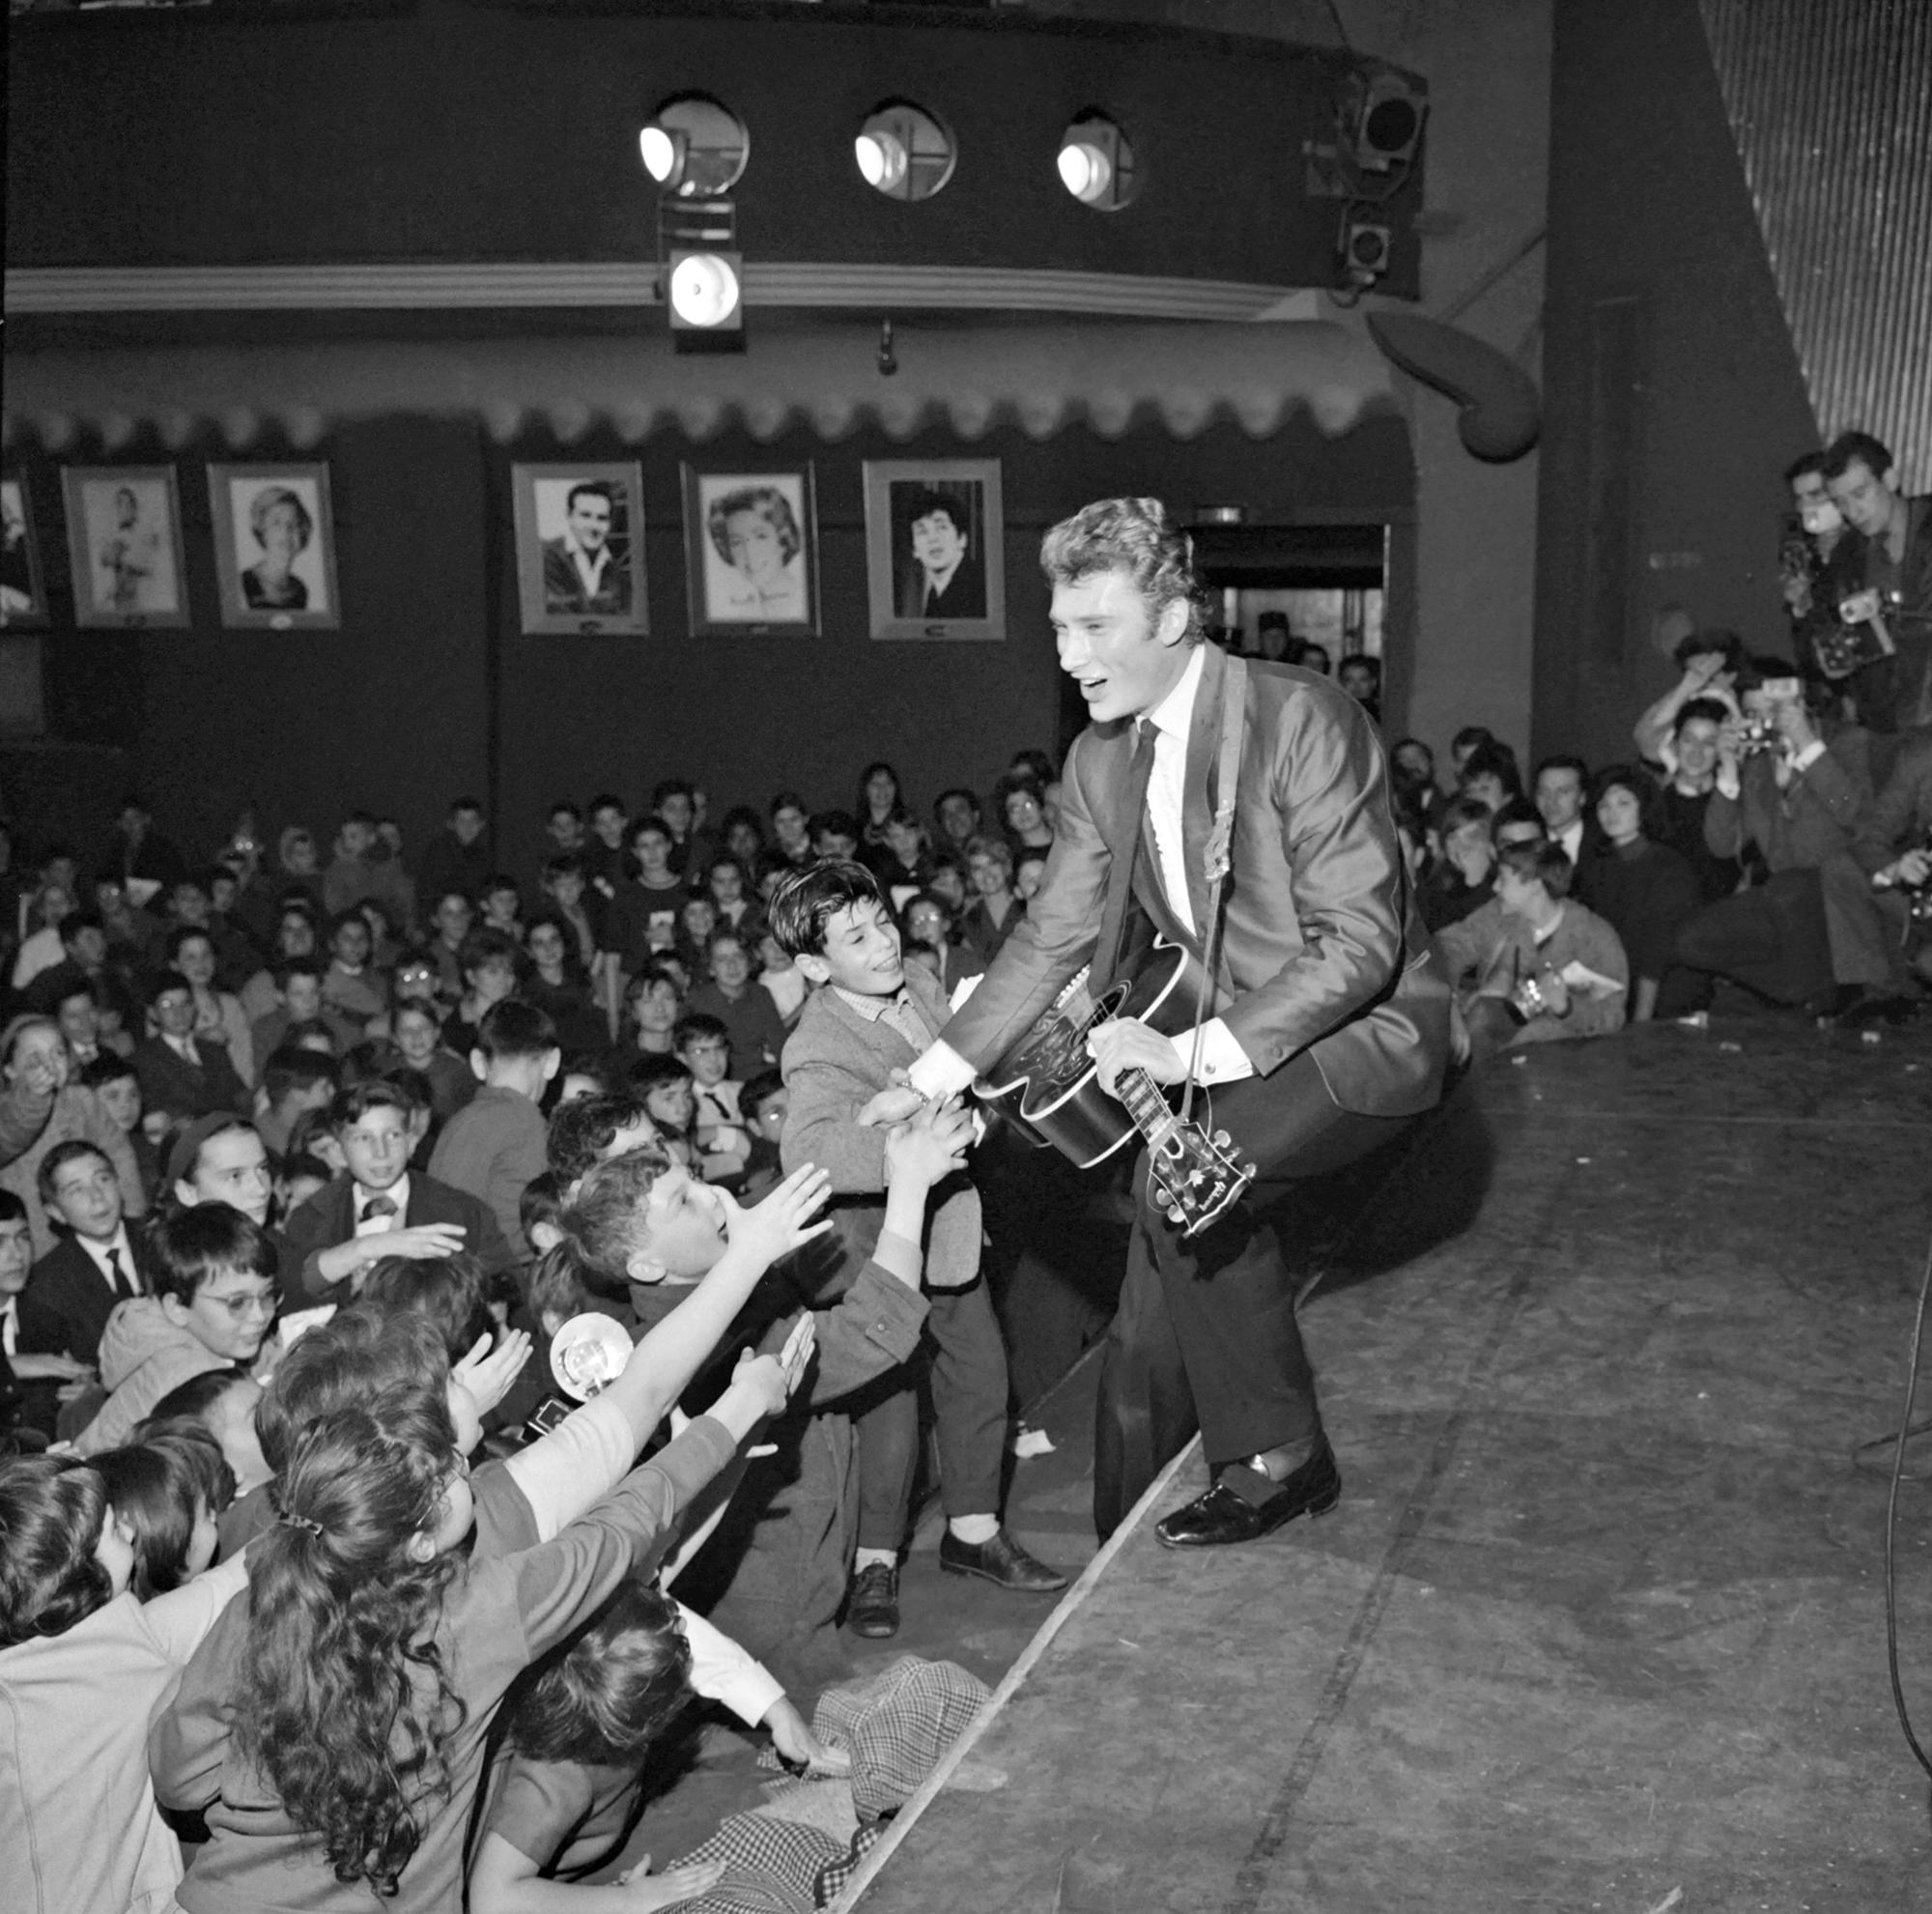 Le chanteur Johnny Hallyday chante devant 3000 enfants enthousiastes qui assistaient ensuite à la première projection du film "Mandrin", dans la salle parisienne de l'Olympia le 13 décembre 1962. [AFP]